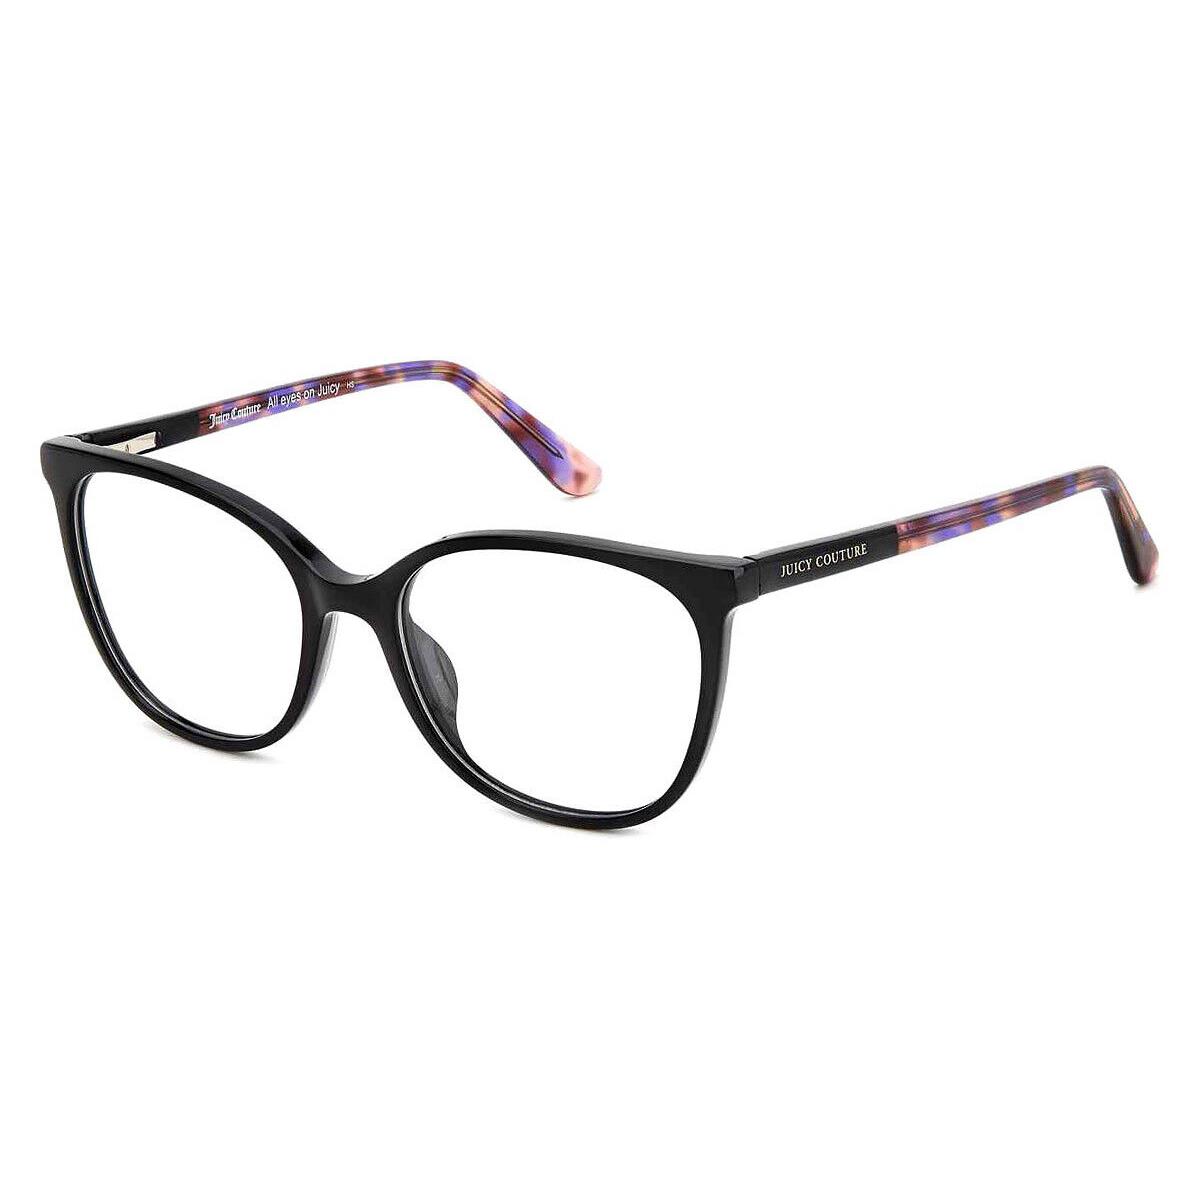 Juicy Couture Juc Eyeglasses Women Black 54mm - Frame: Black, Lens: Demo